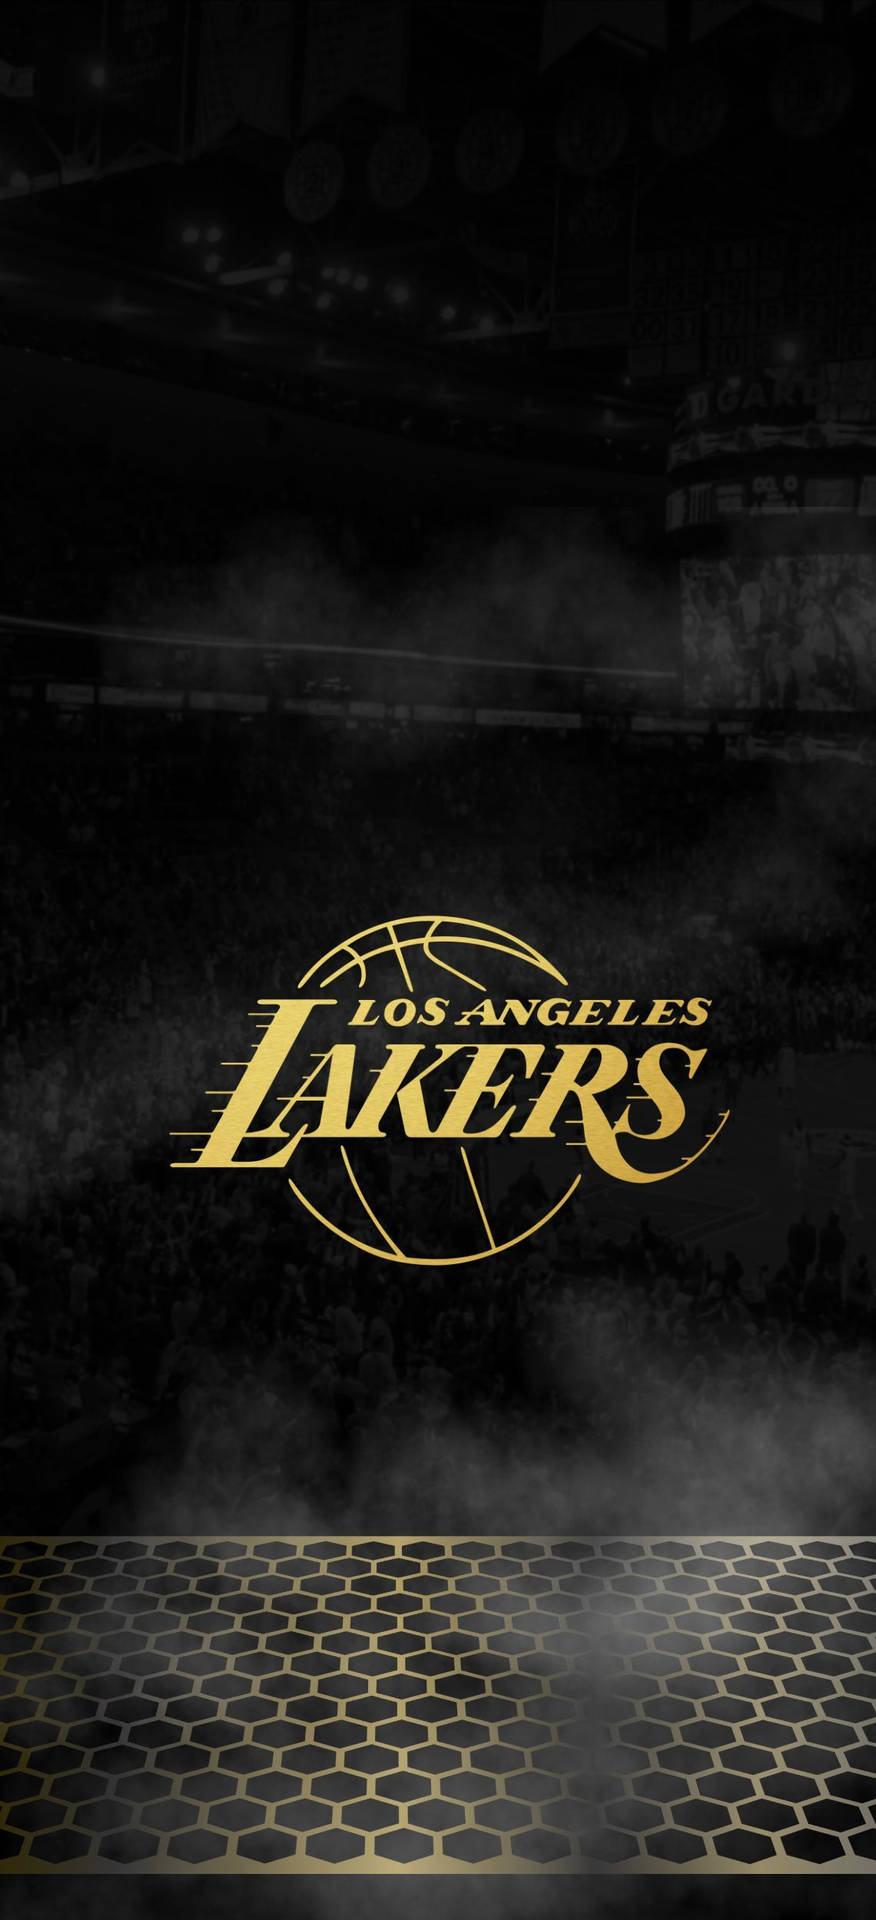 Muestratu Orgullo Por Los Lakers Con El Fondo De Pantalla Perfecto Para Tu Iphone Temático De Los Lakers. Fondo de pantalla